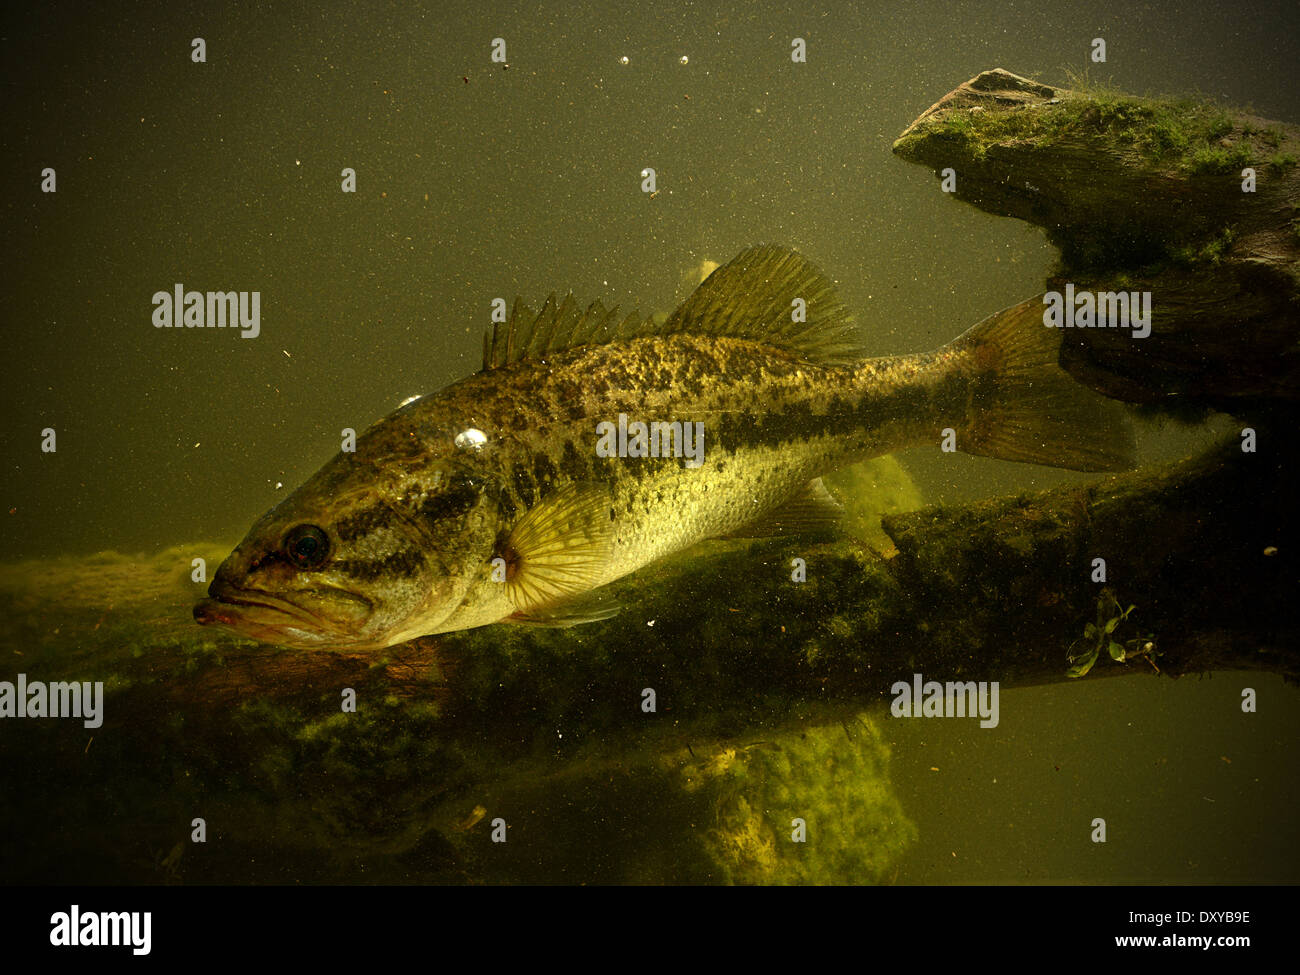 largemouth bass fish underwater in lake Stock Photo - Alamy